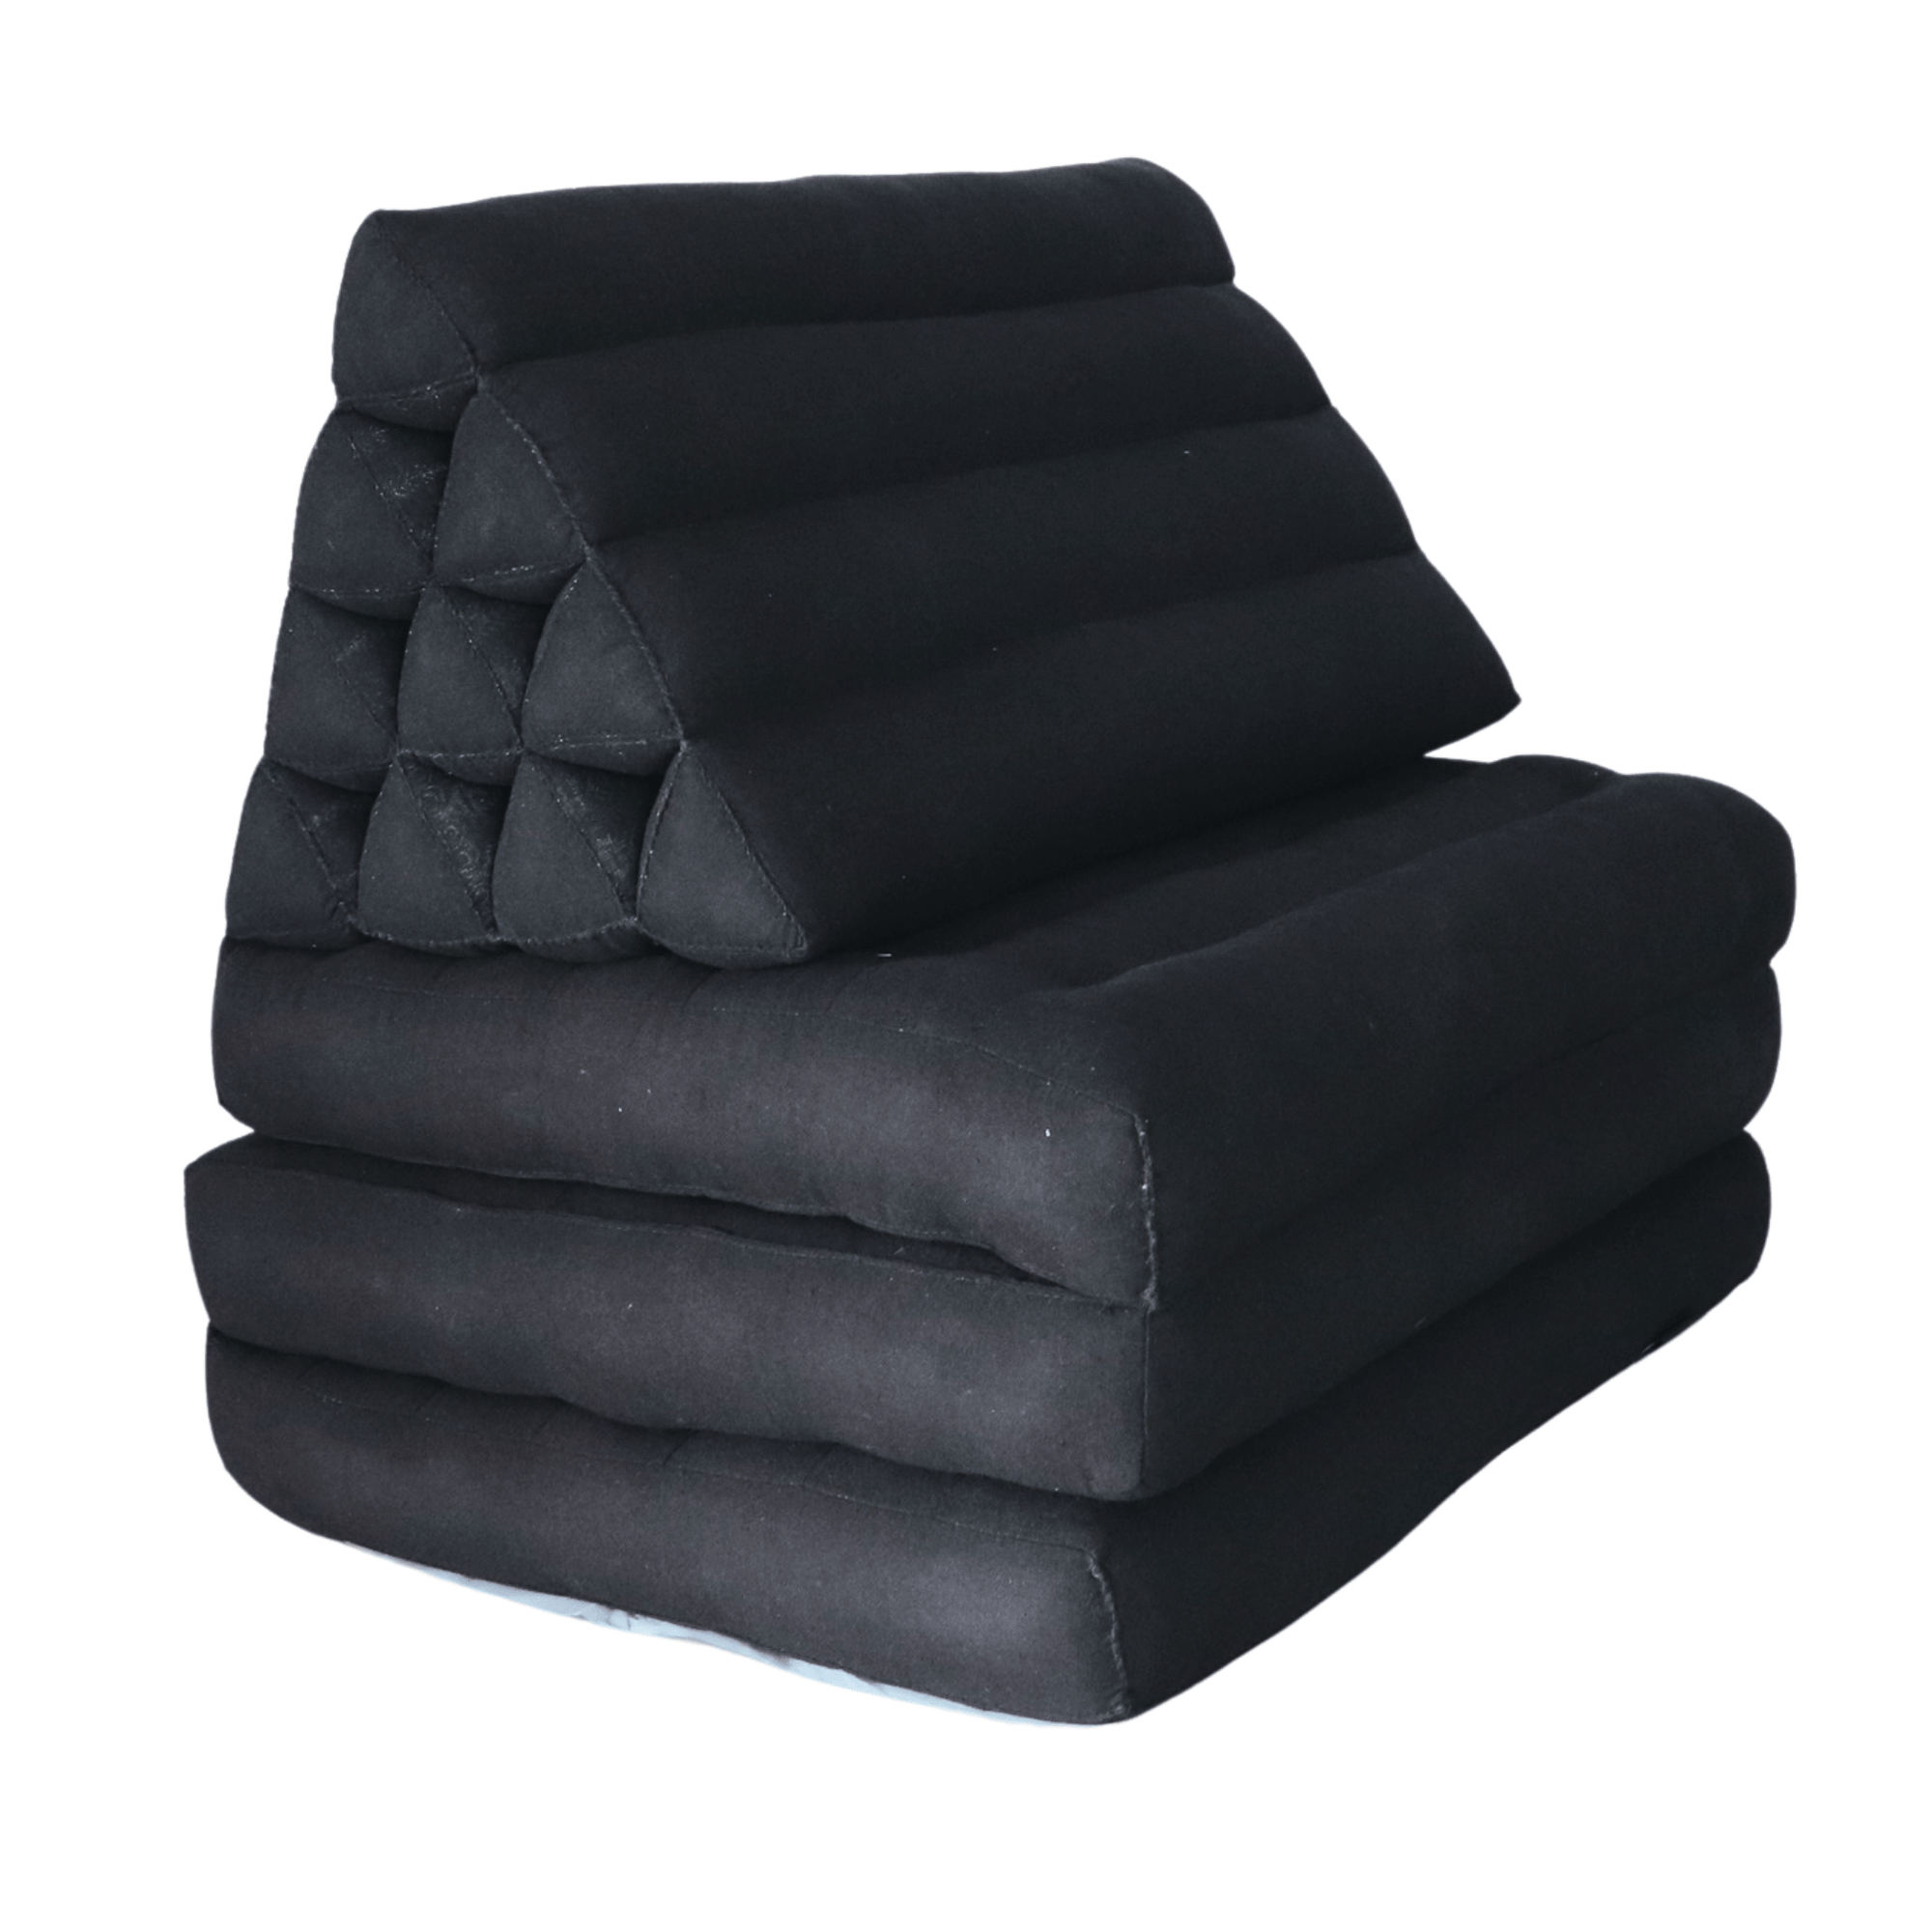 NANNETTE - Thai Triangle Cushion (3 Fold - 19 x 12 Inches - Black)